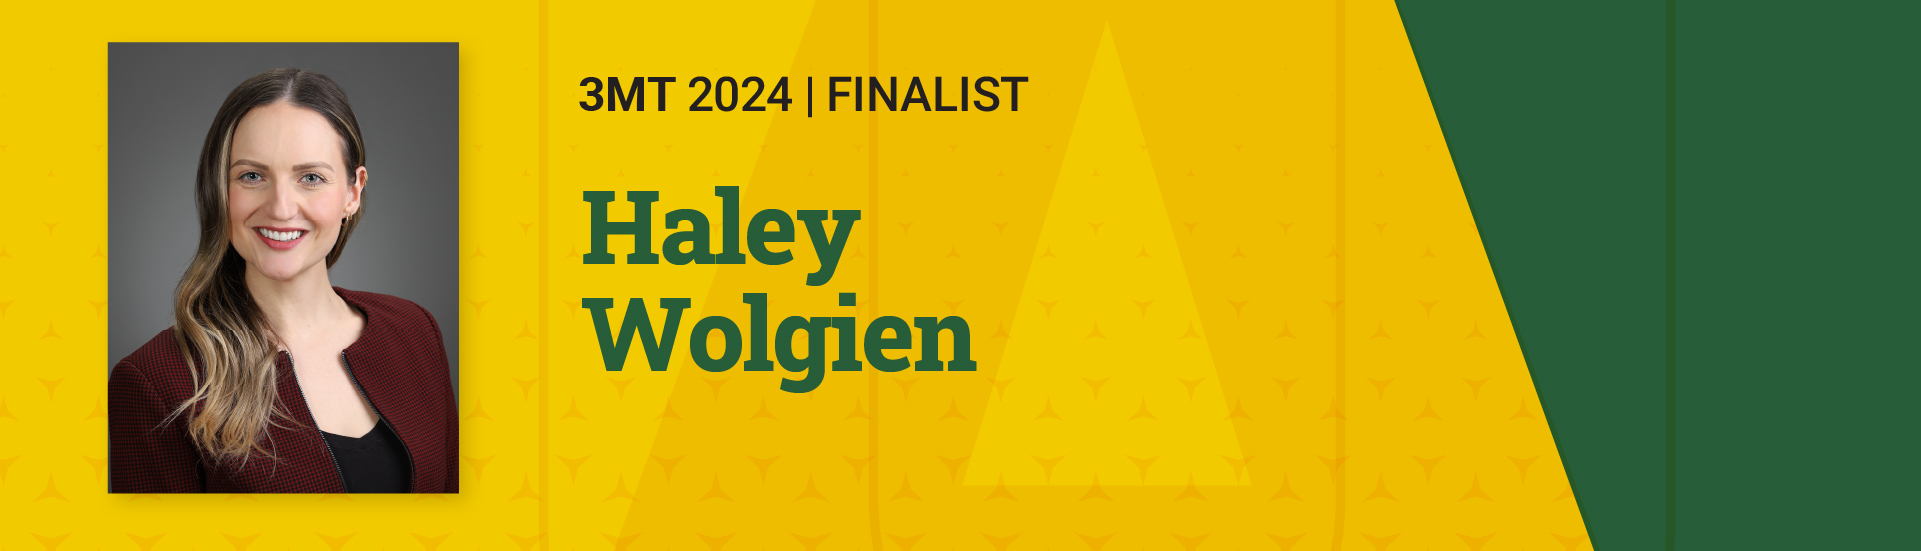 3MT 2024 Finalist Haley Wolgien